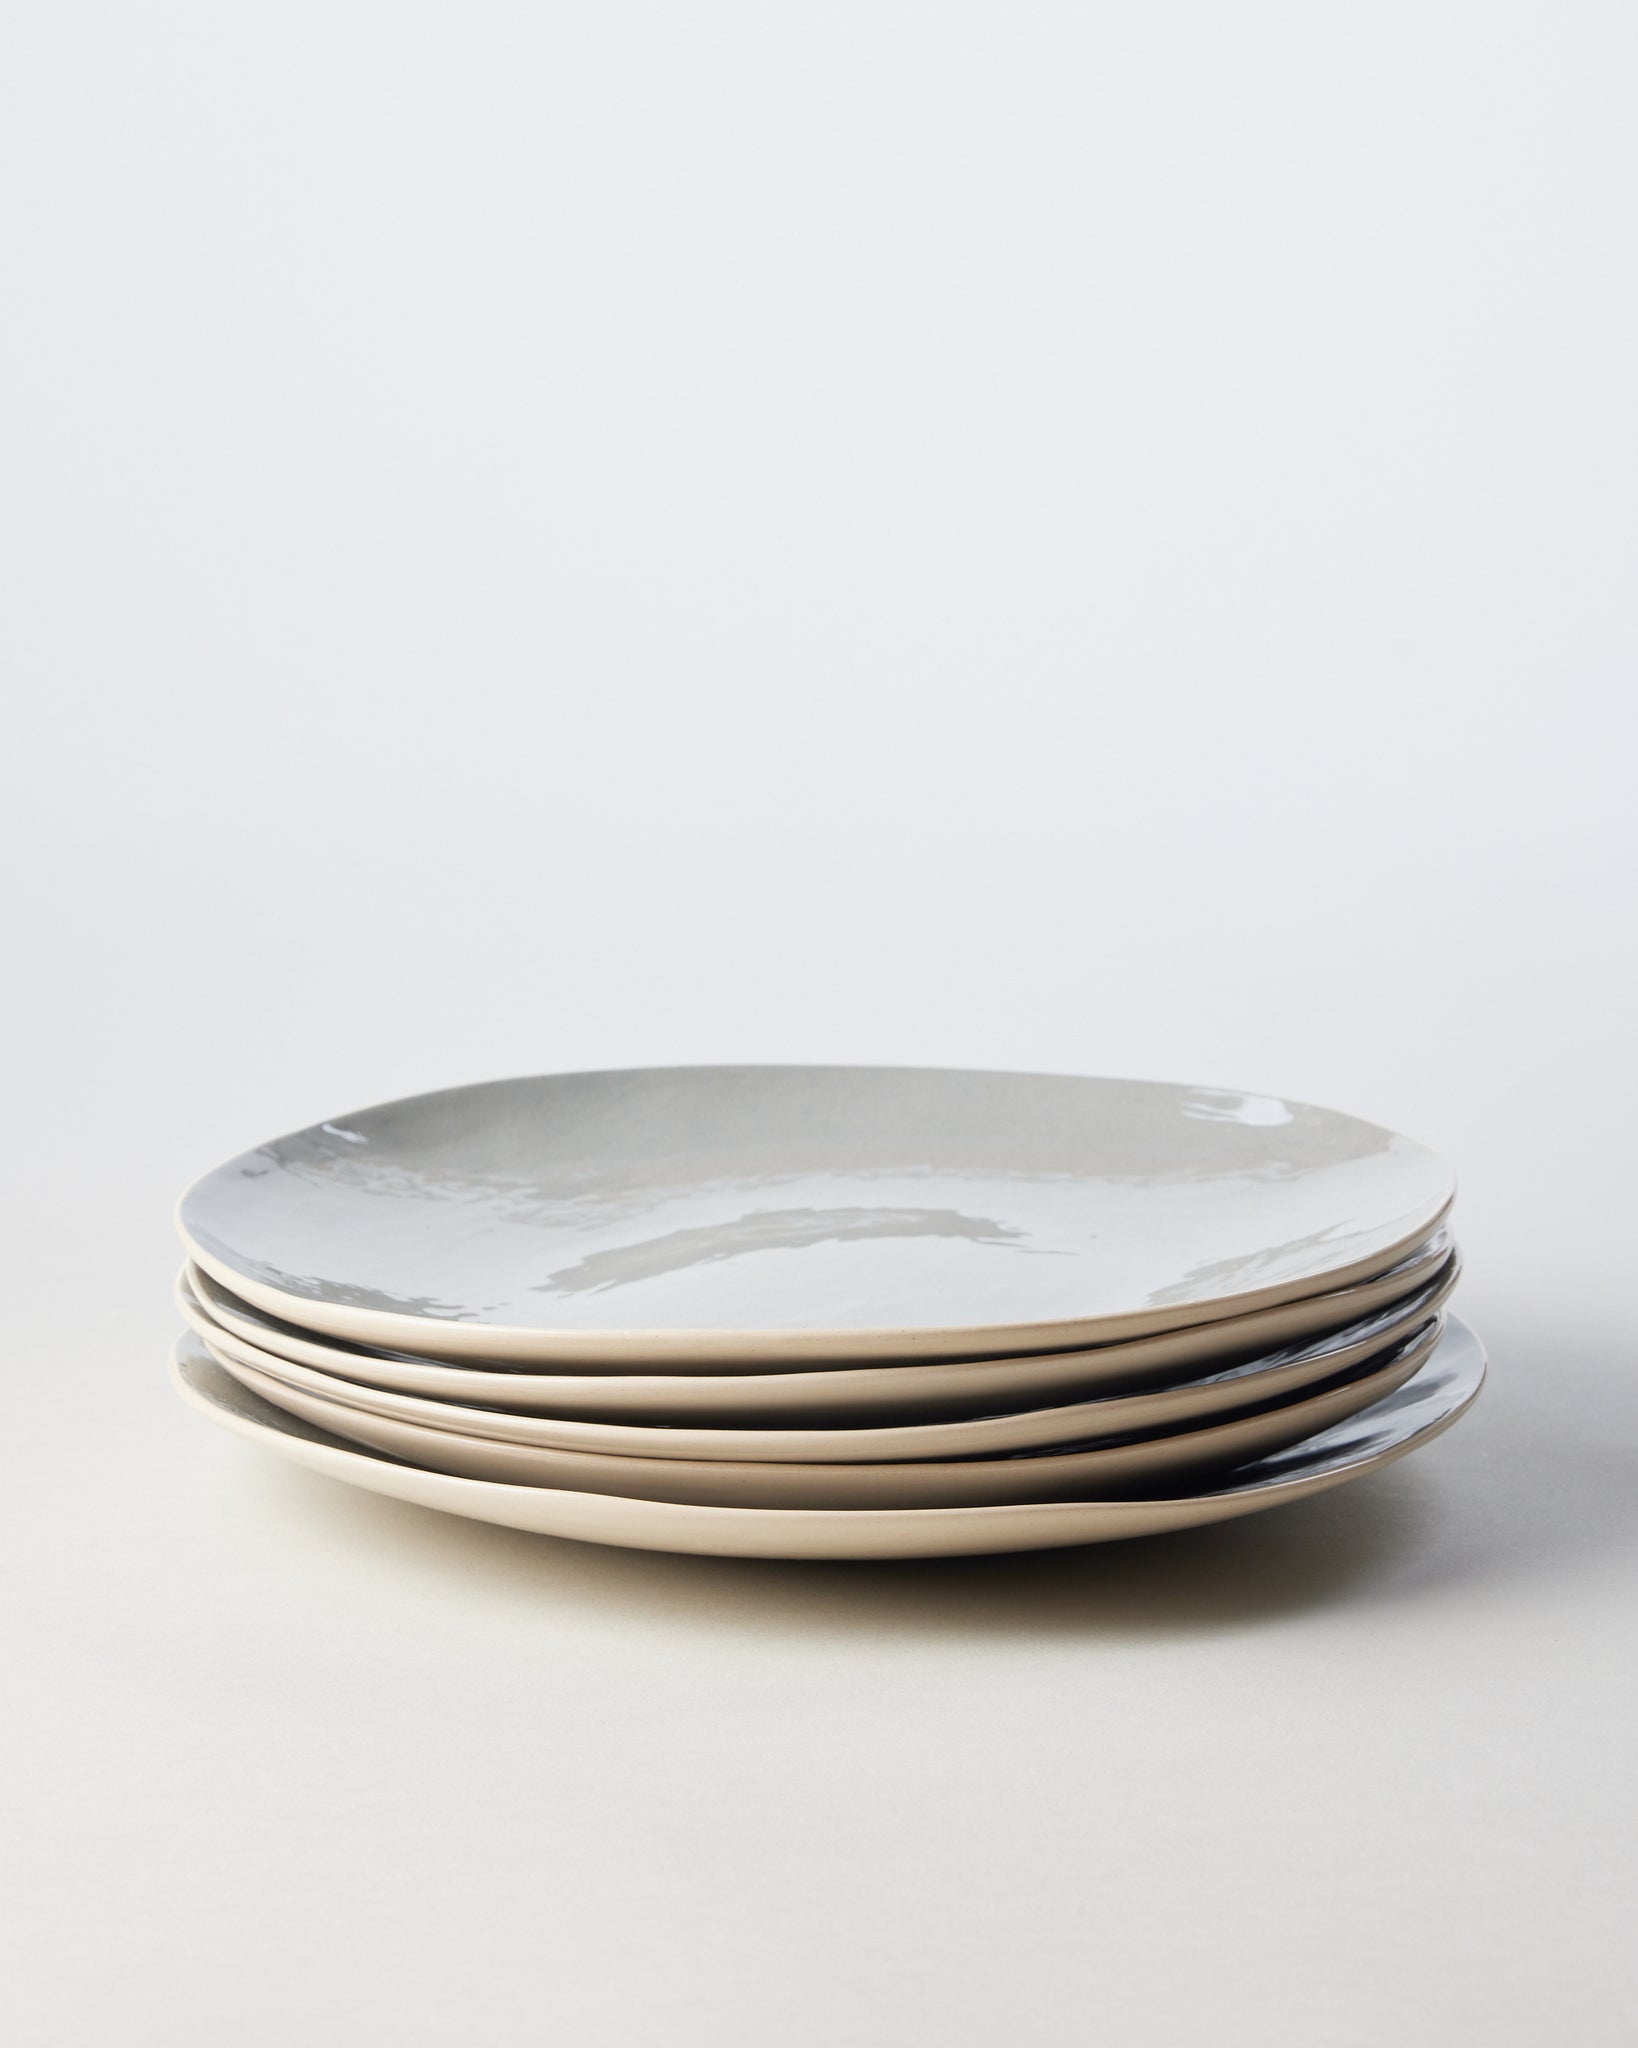 Medium Plate in Pumice